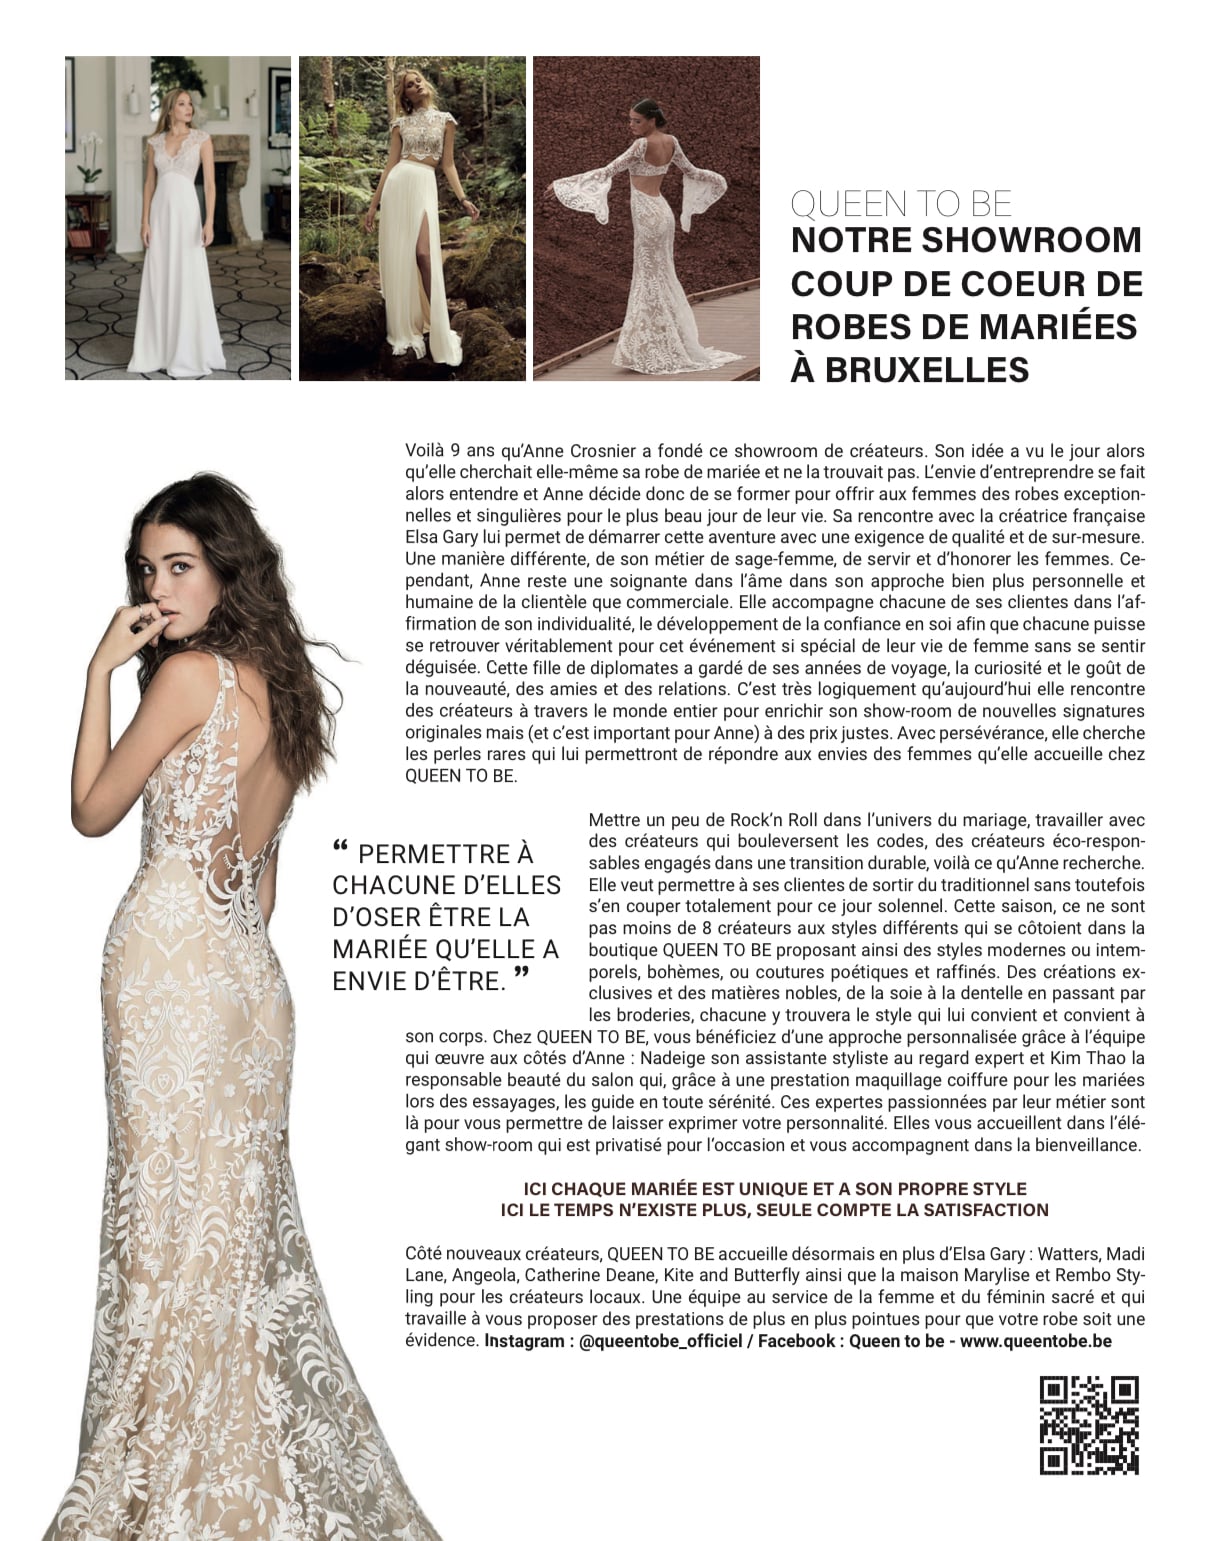 Elle Magazine parle de notre showroom de robes de mariée dans son article "coup de cœur"